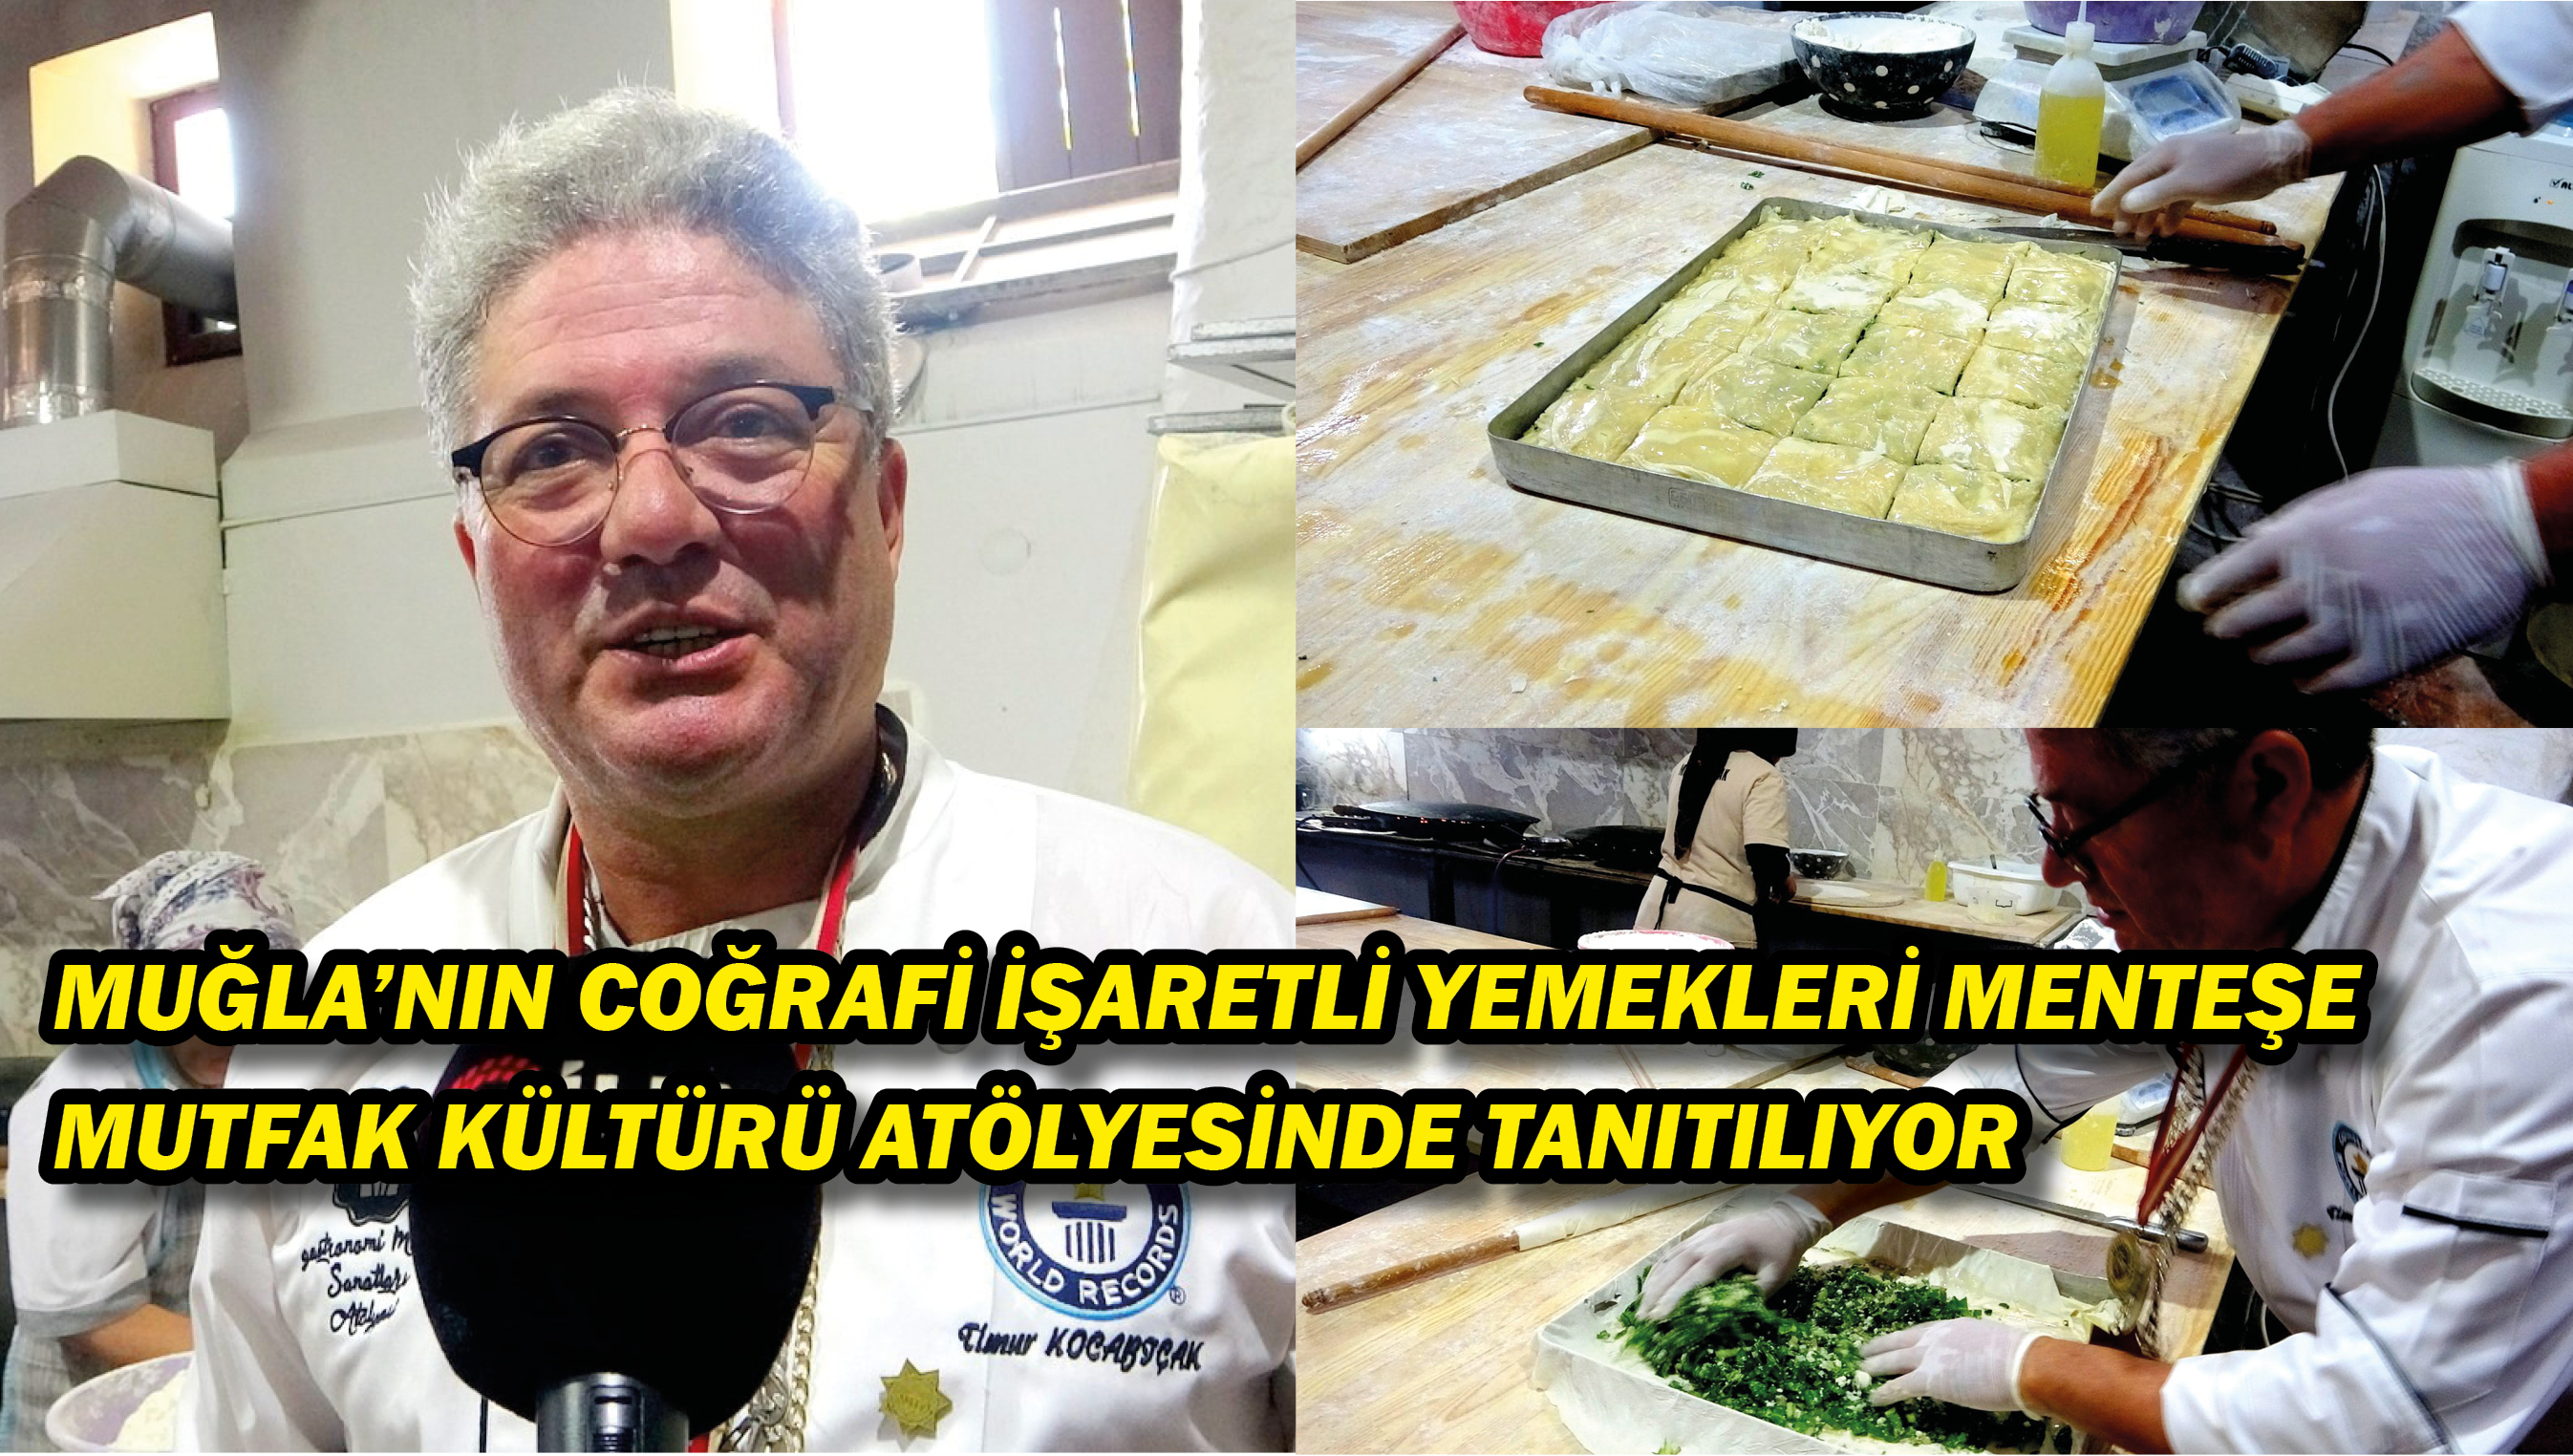 Muğla’nın coğrafi işaretli yemekleri Menteşe Mutfak Kültürü Atölyesinde tanıtılıyor